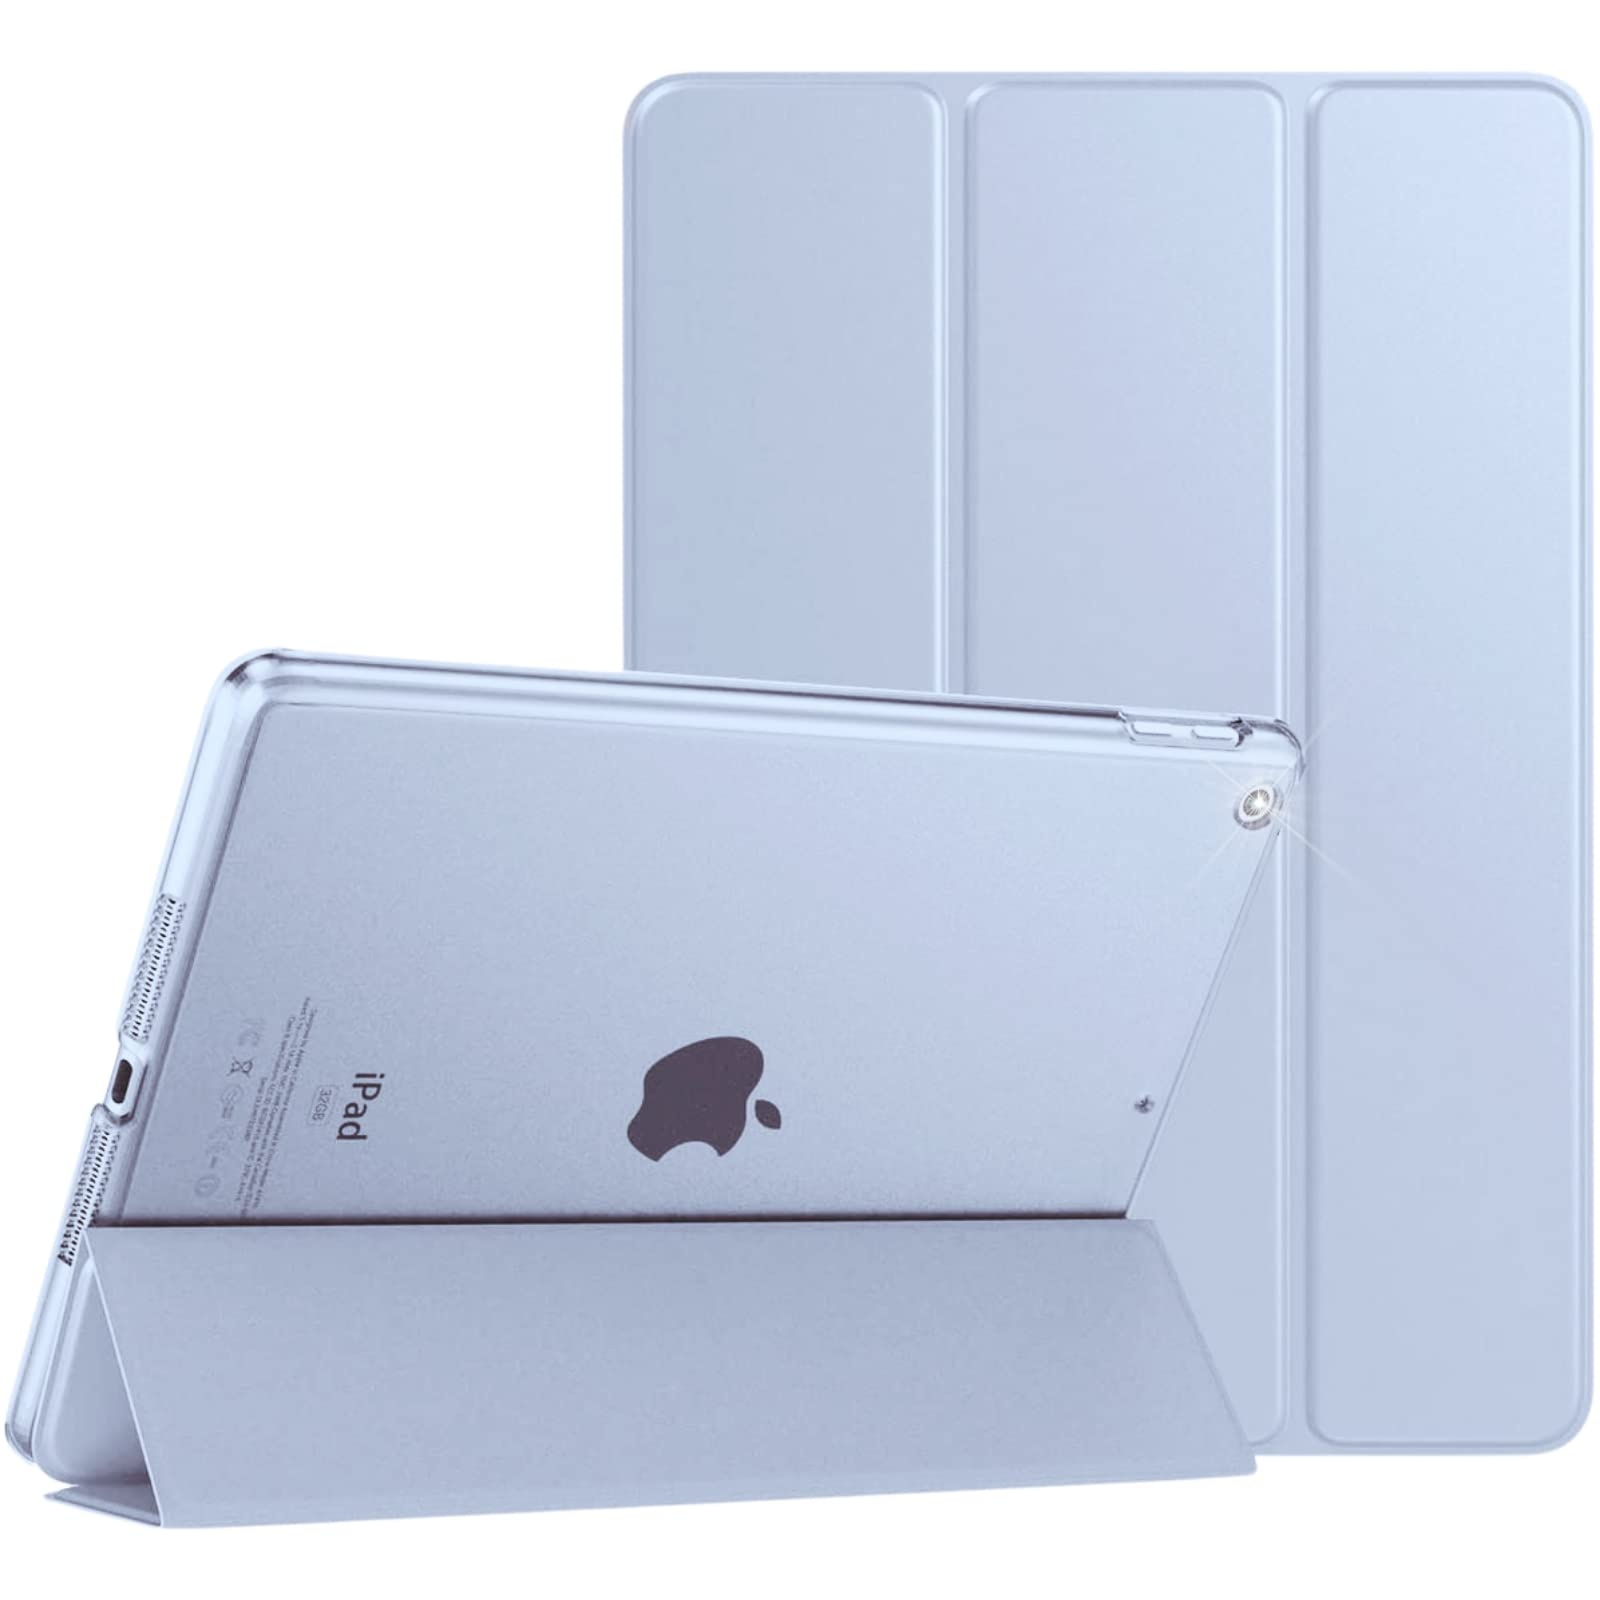 Schutzhülle für Apple iPad Air 2, magnetische Lederhülle, automatische Wake/Sleep-Funktion, passend für Modell-Nr. A1566 / A1567, Weiß